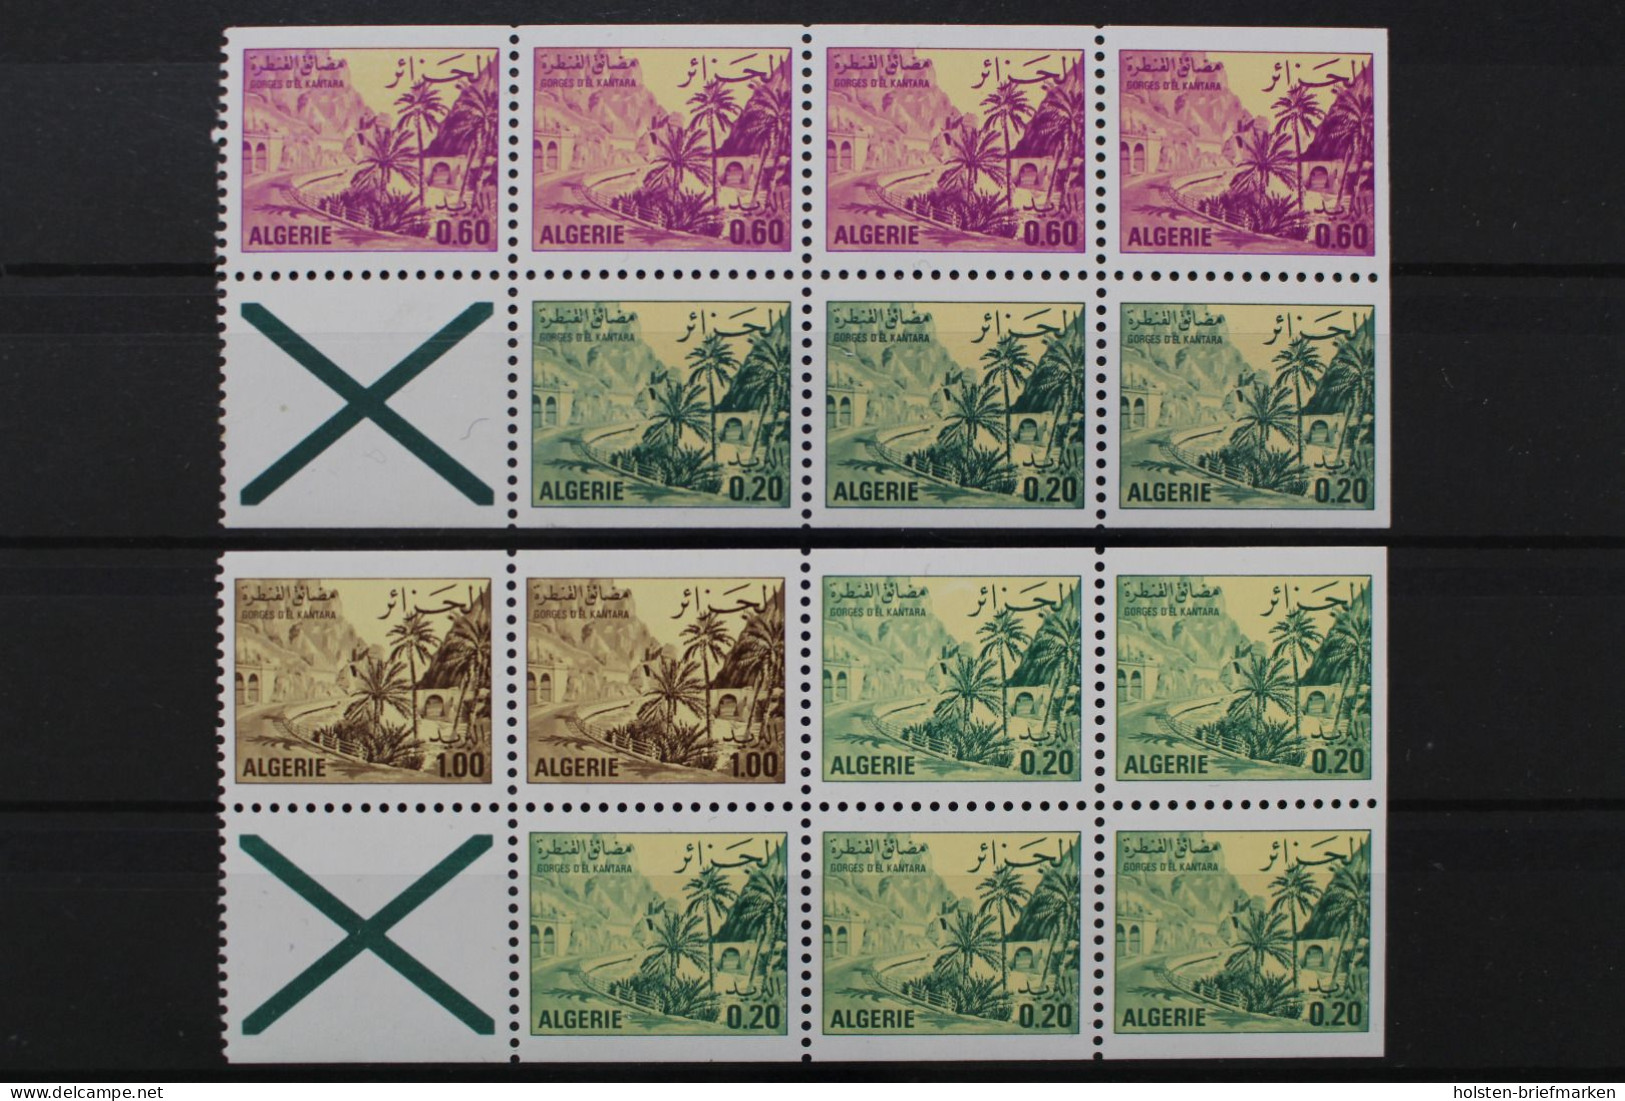 Algerien, MiNr. 695-697 C, 2 Heftchenblätter, Postfrisch - Algeria (1962-...)